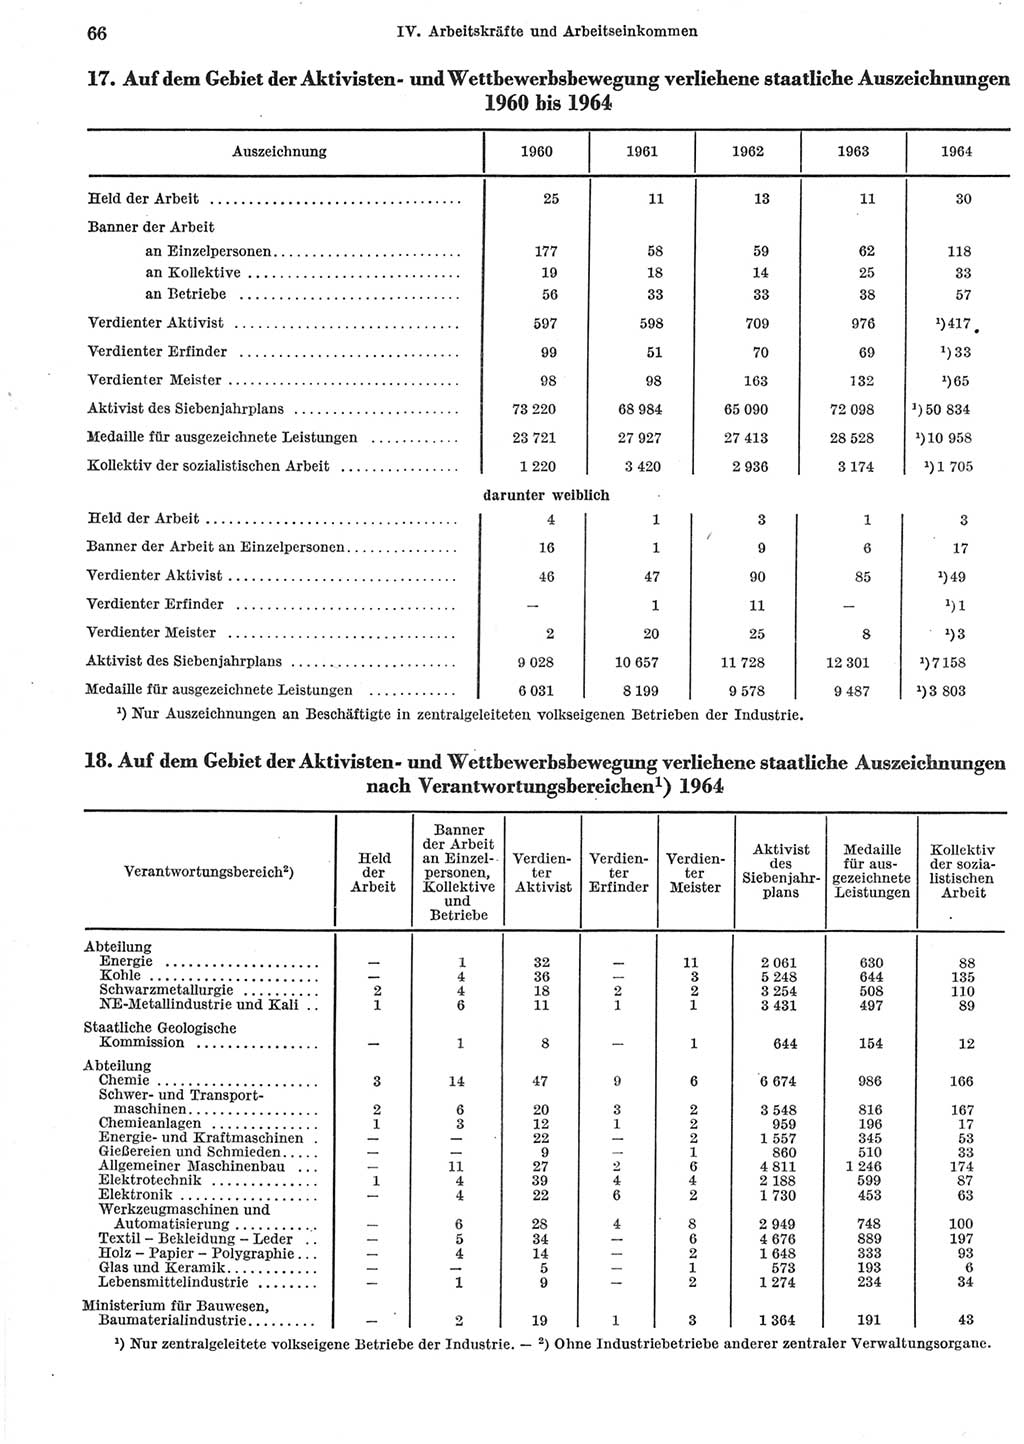 Statistisches Jahrbuch der Deutschen Demokratischen Republik (DDR) 1965, Seite 66 (Stat. Jb. DDR 1965, S. 66)